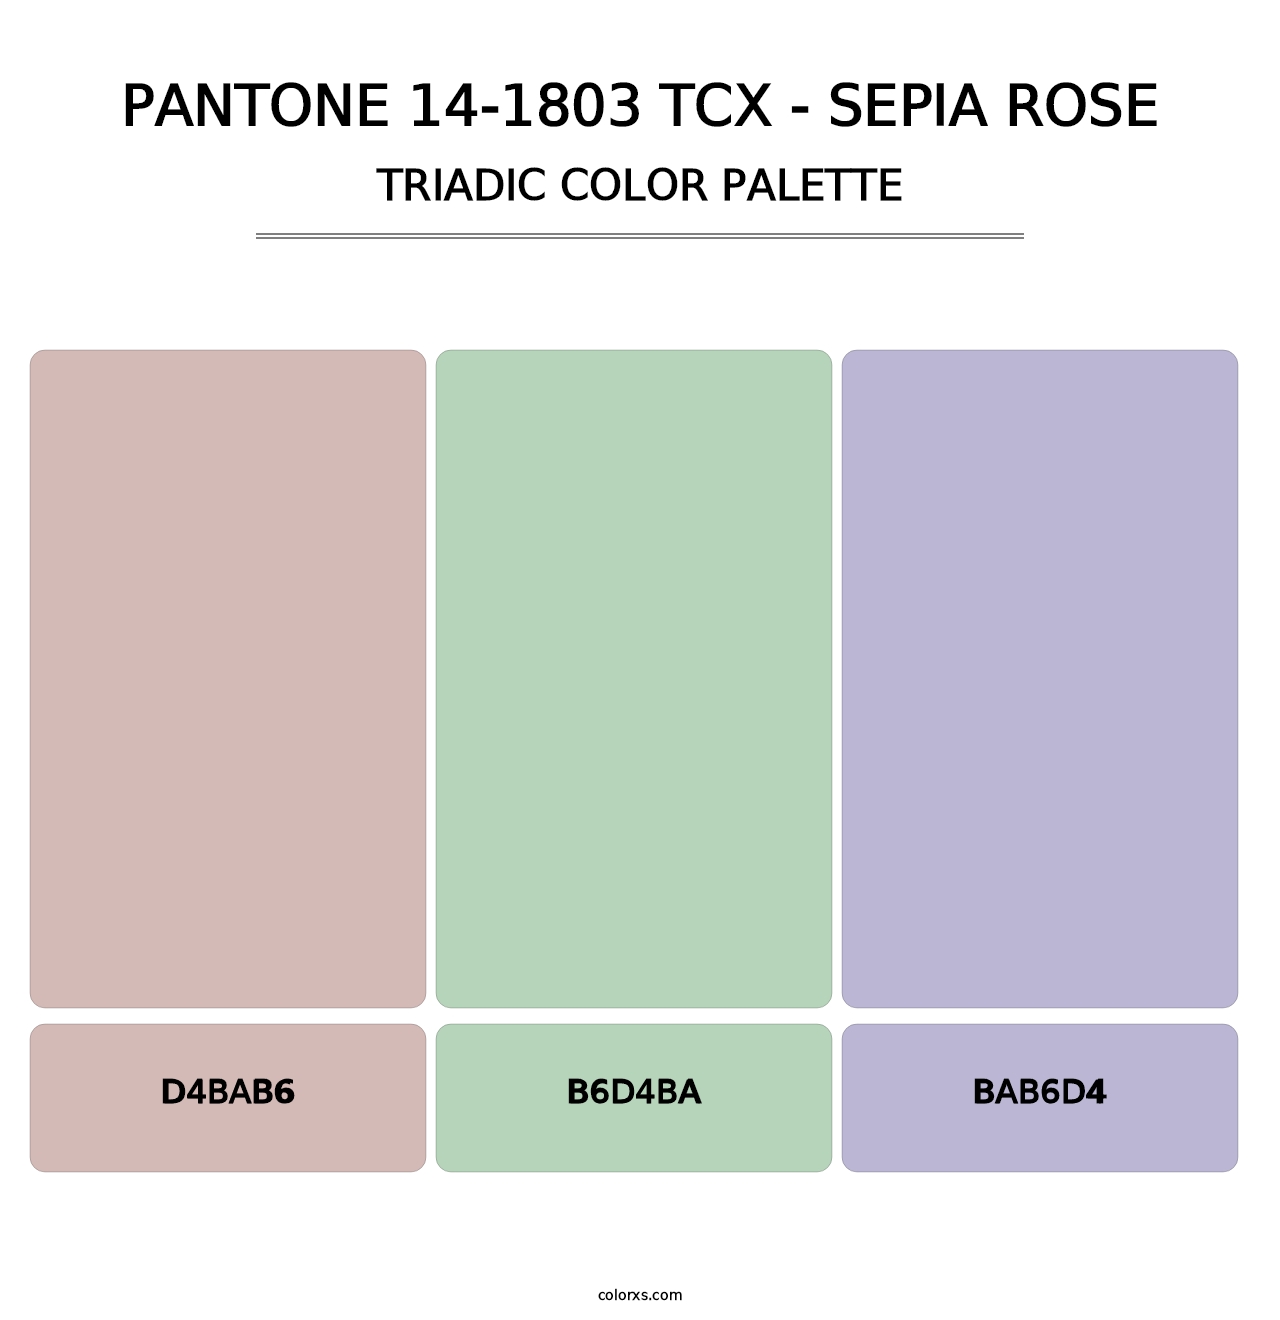 PANTONE 14-1803 TCX - Sepia Rose - Triadic Color Palette